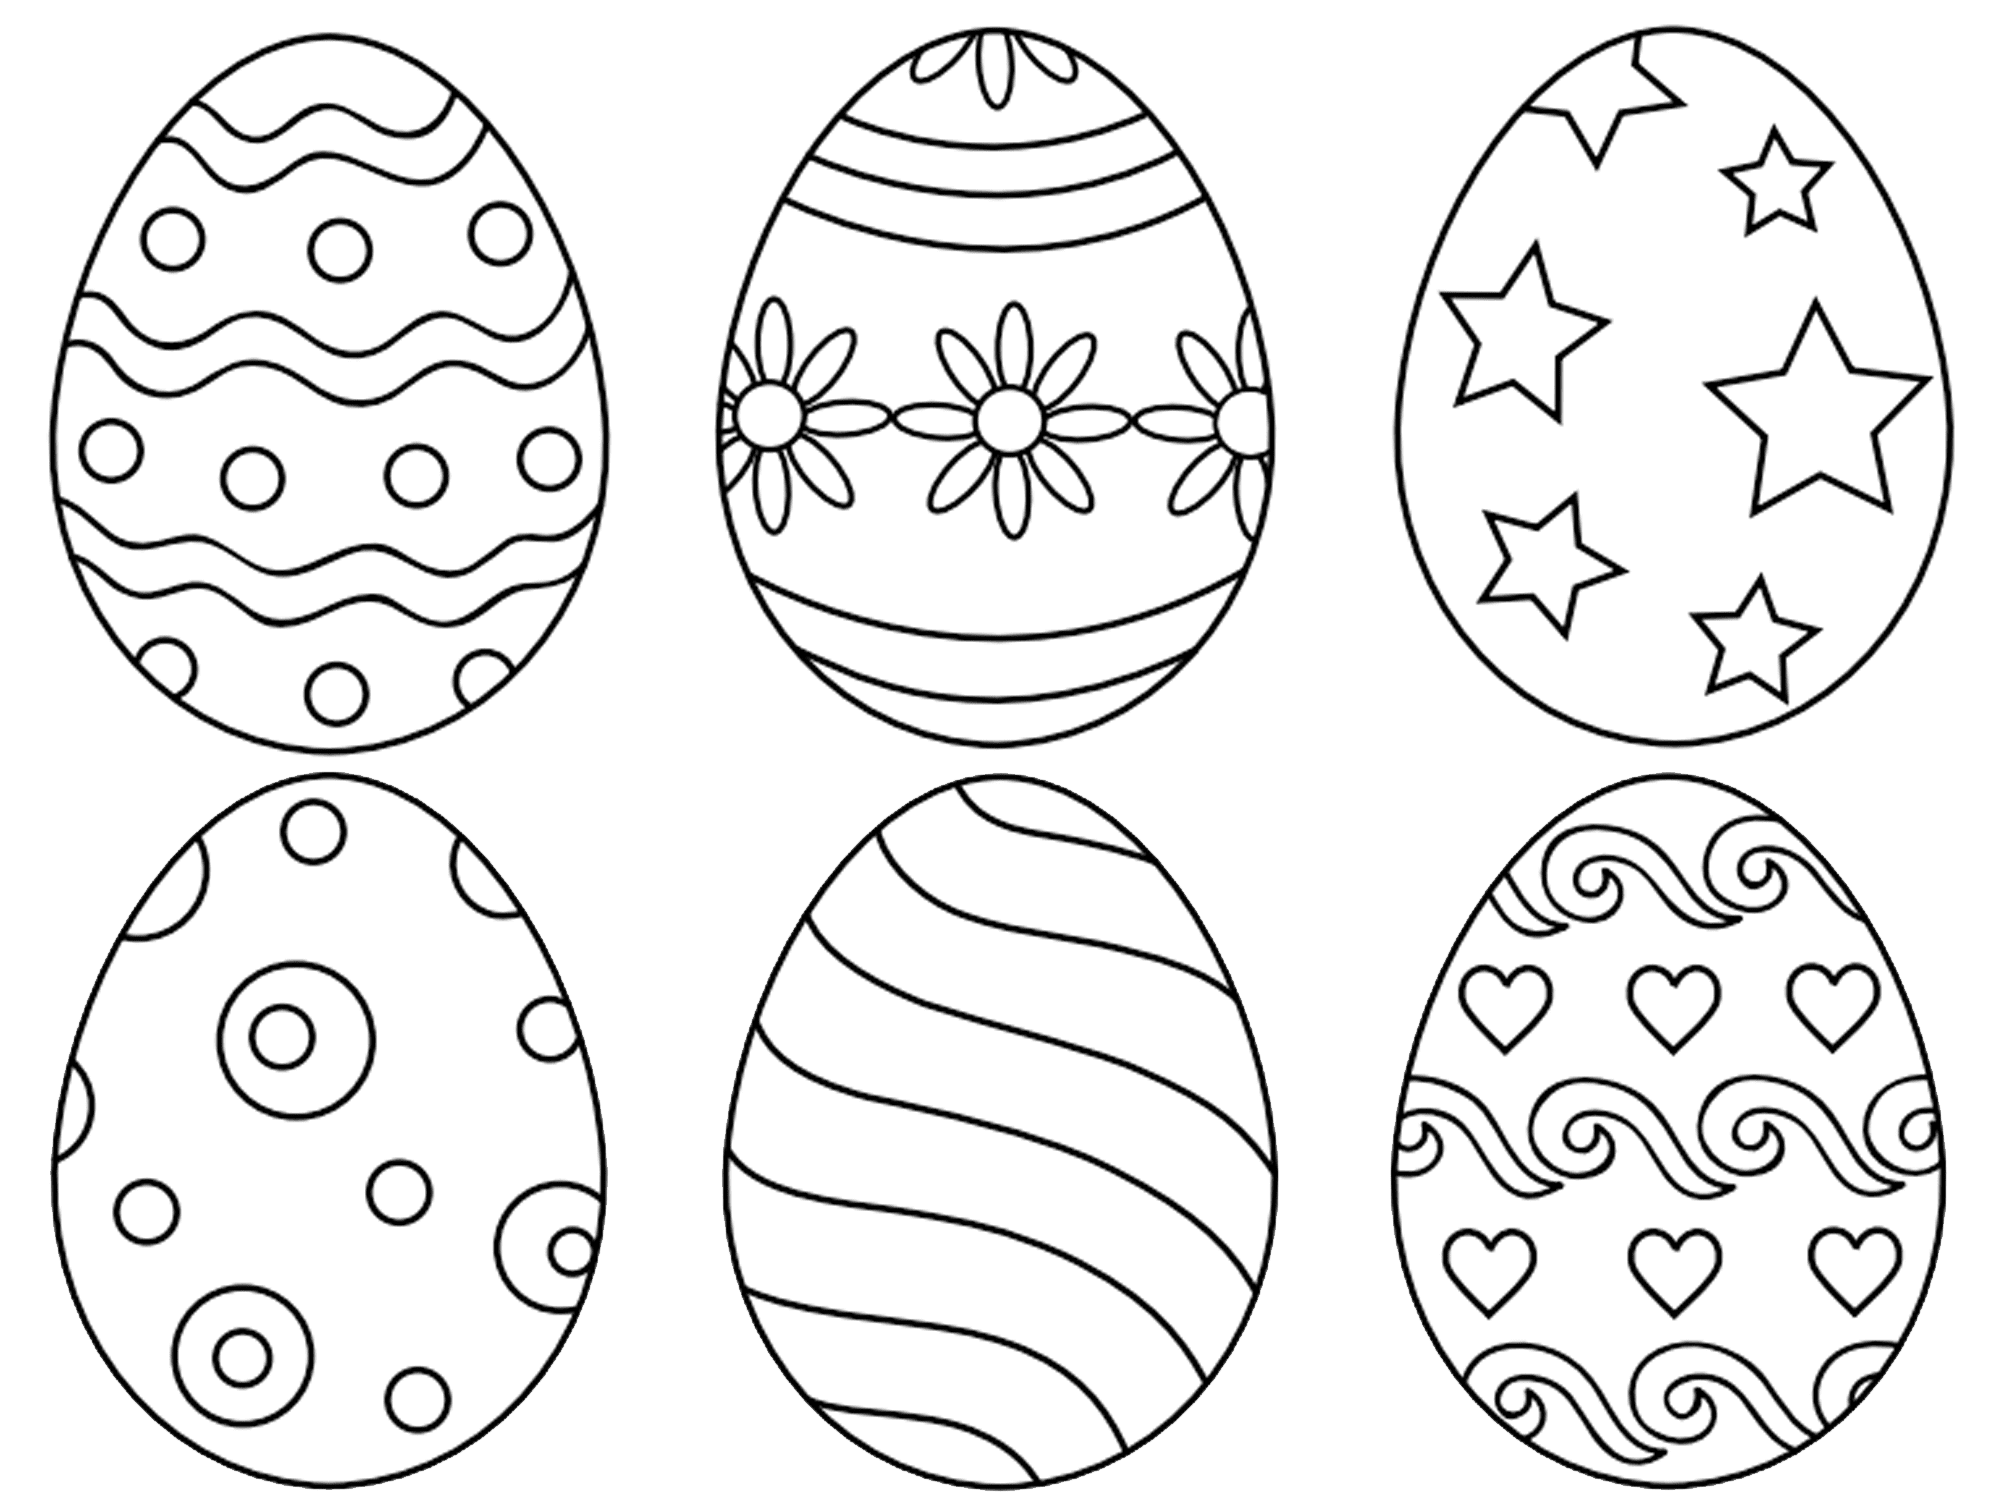 Раскраски Пасхальных яиц для детей распечатать бесплатно или скачать